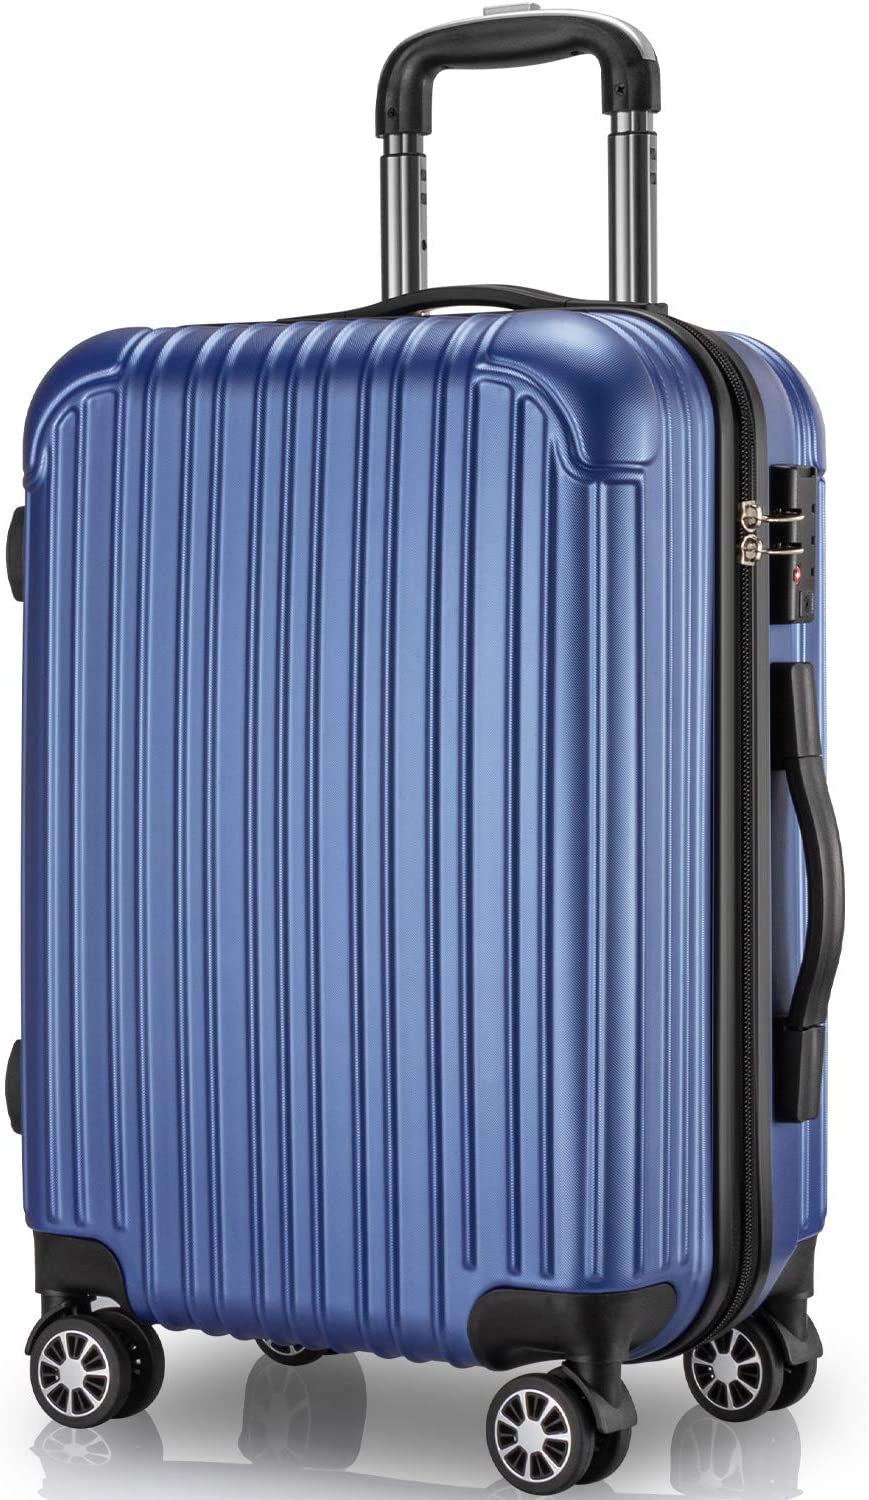 スーツケース キャリーケース 65L Mサイズ 大量収納 TSAロック